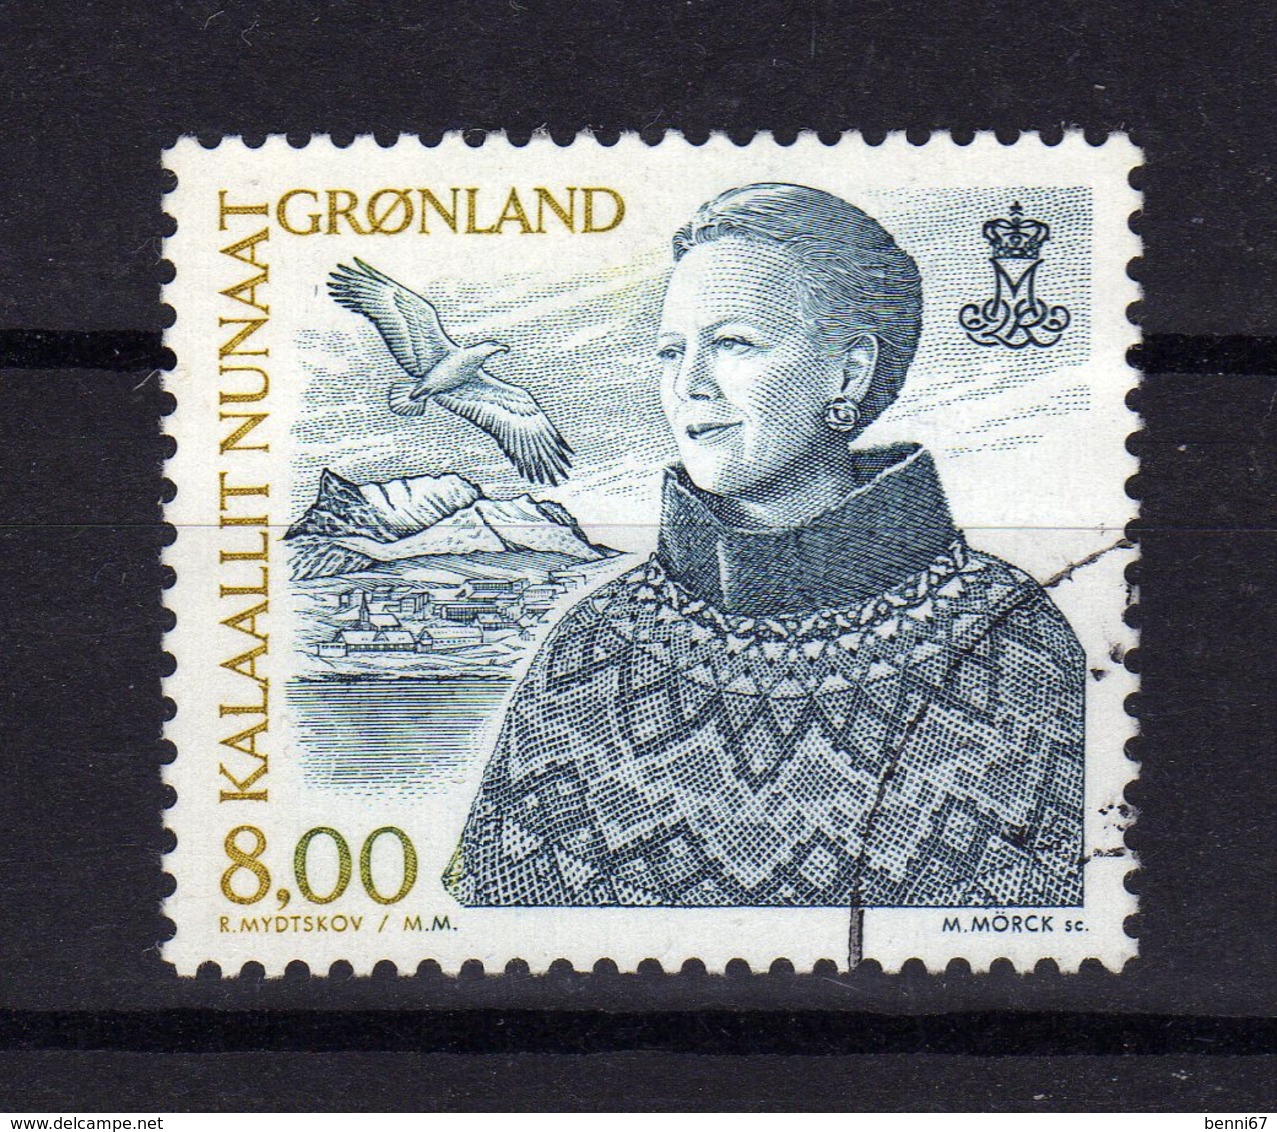 GROENLAND Greenland 2000 Reine Queen  Yv 336 OBL - Gebraucht